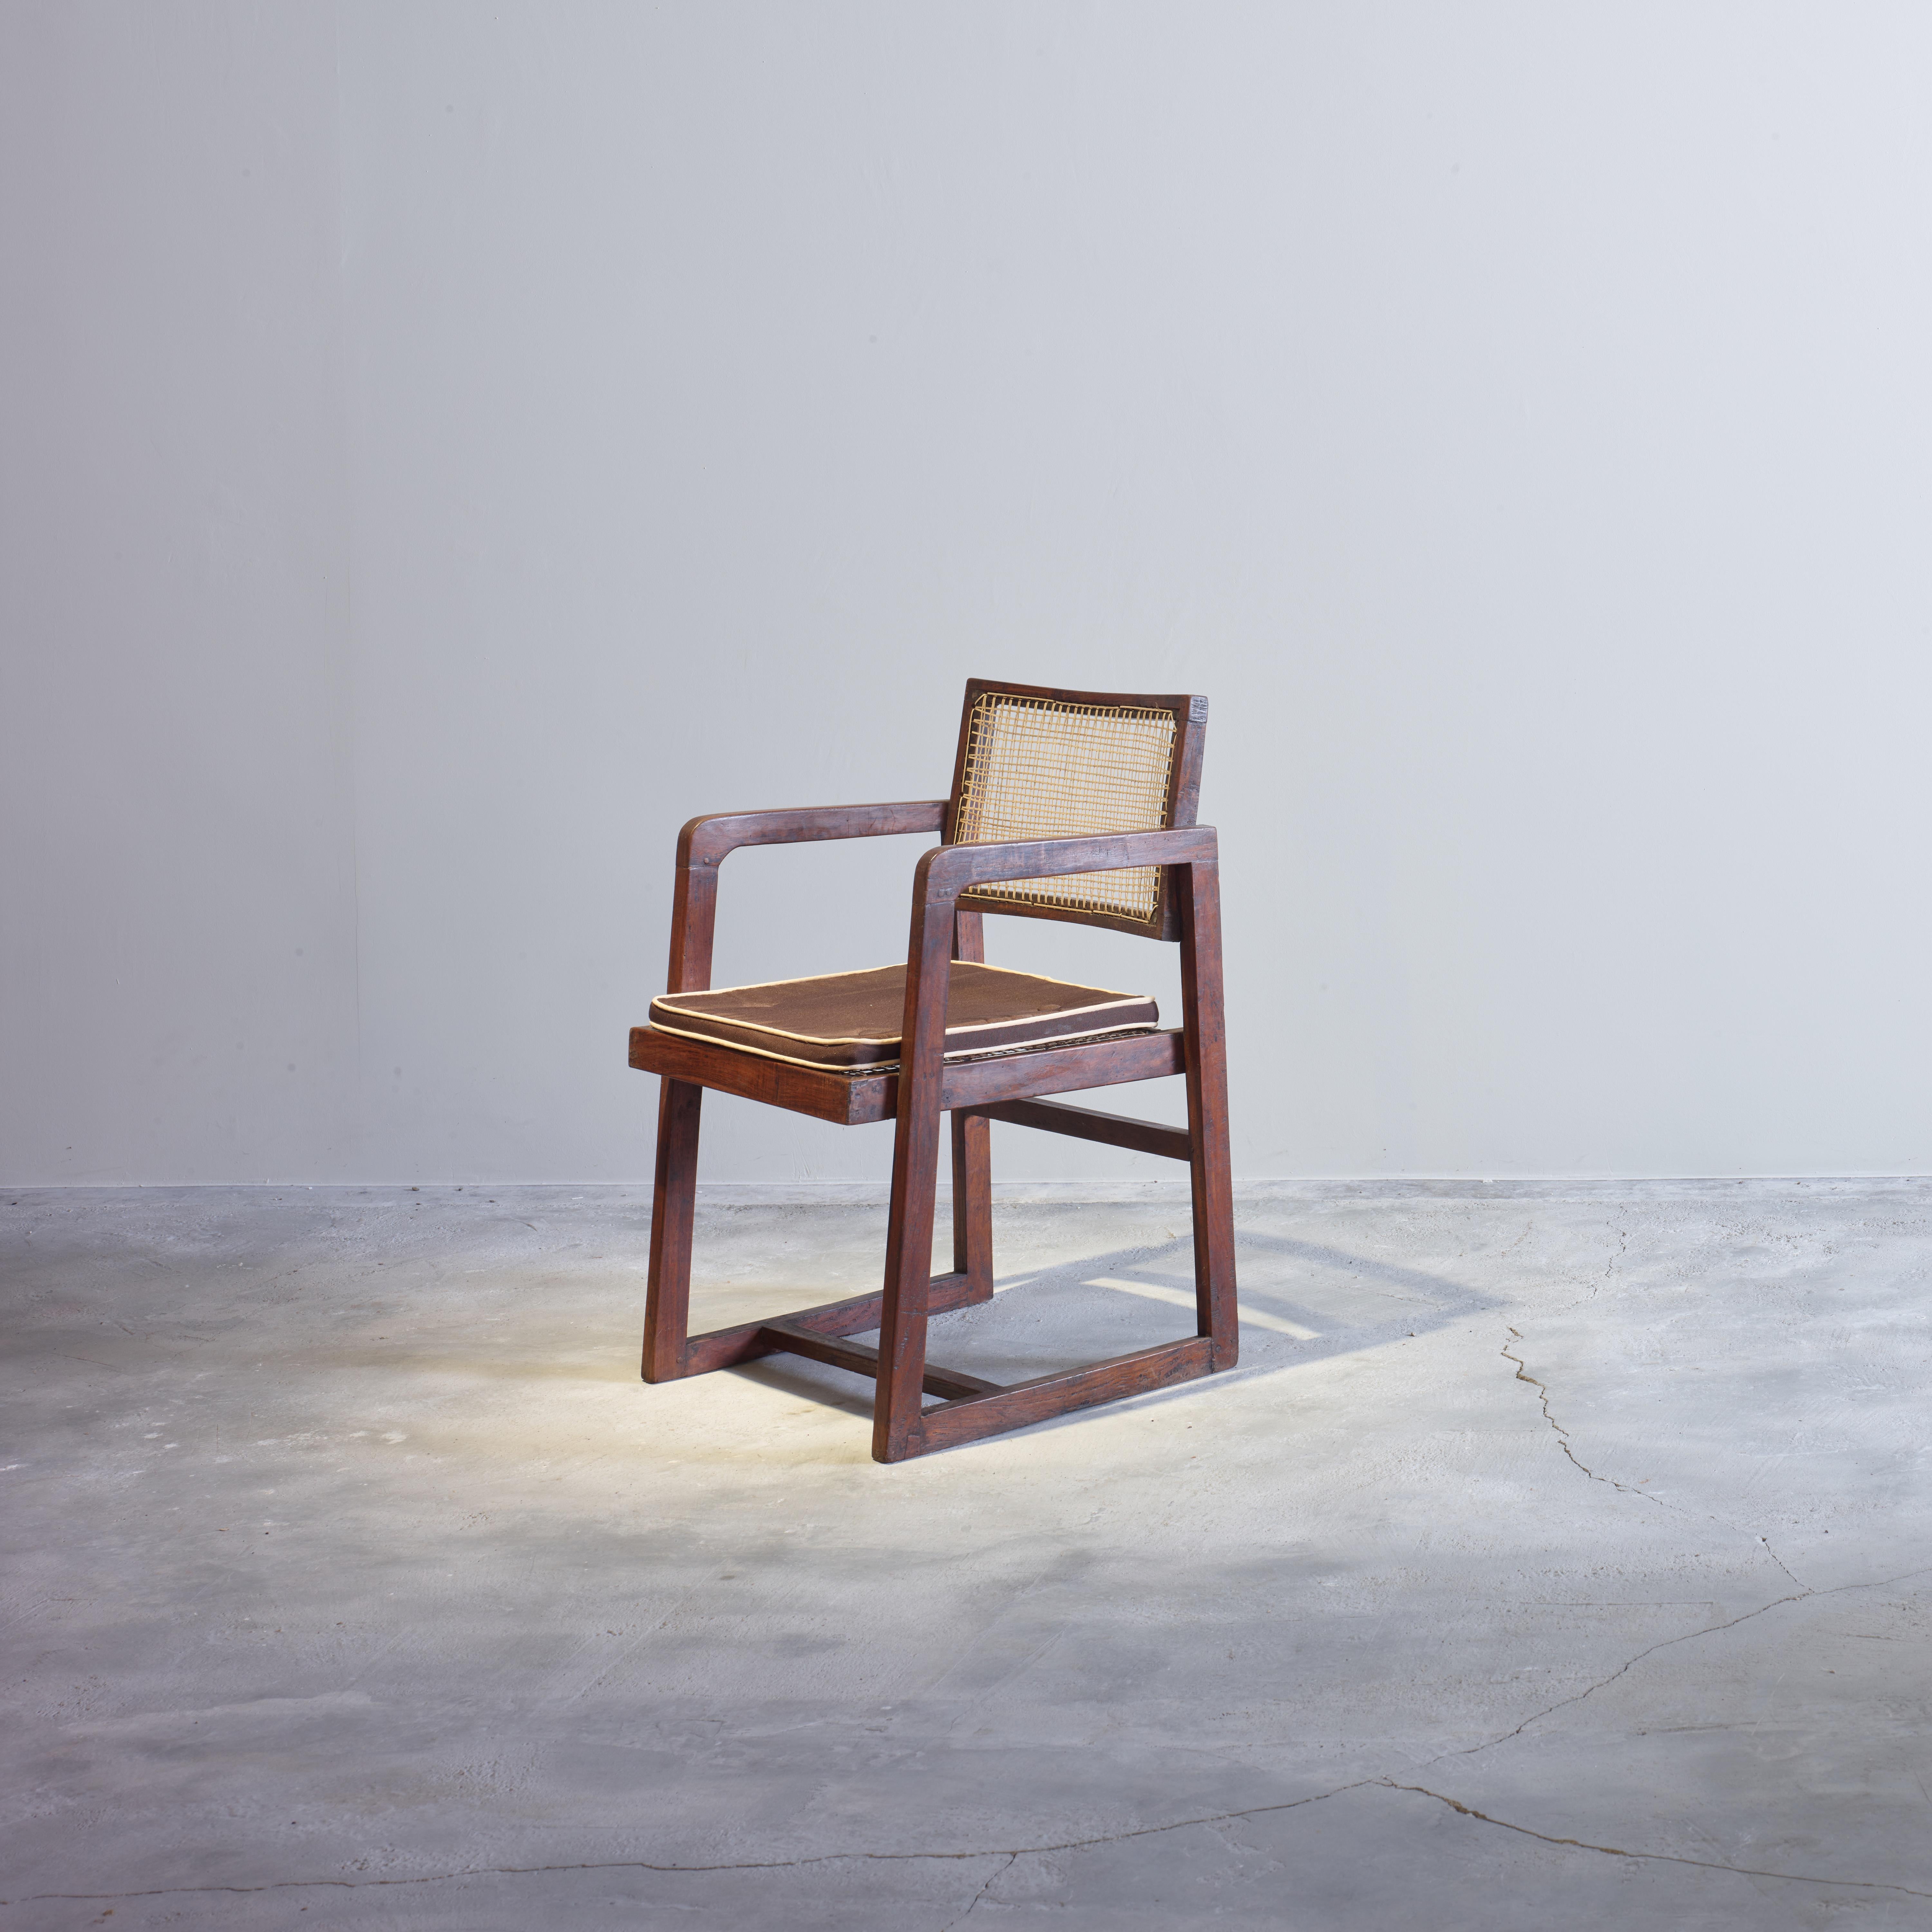 Cette chaise est une pièce fantastique, enfin elle est iconique. Il est brut dans sa simplicité, rien de trop mais pourtant rien ne manque. Il s'agit d'une chaise dont la forme est très solide. Dans la grande sélection d'objets de Bigli, il occupe